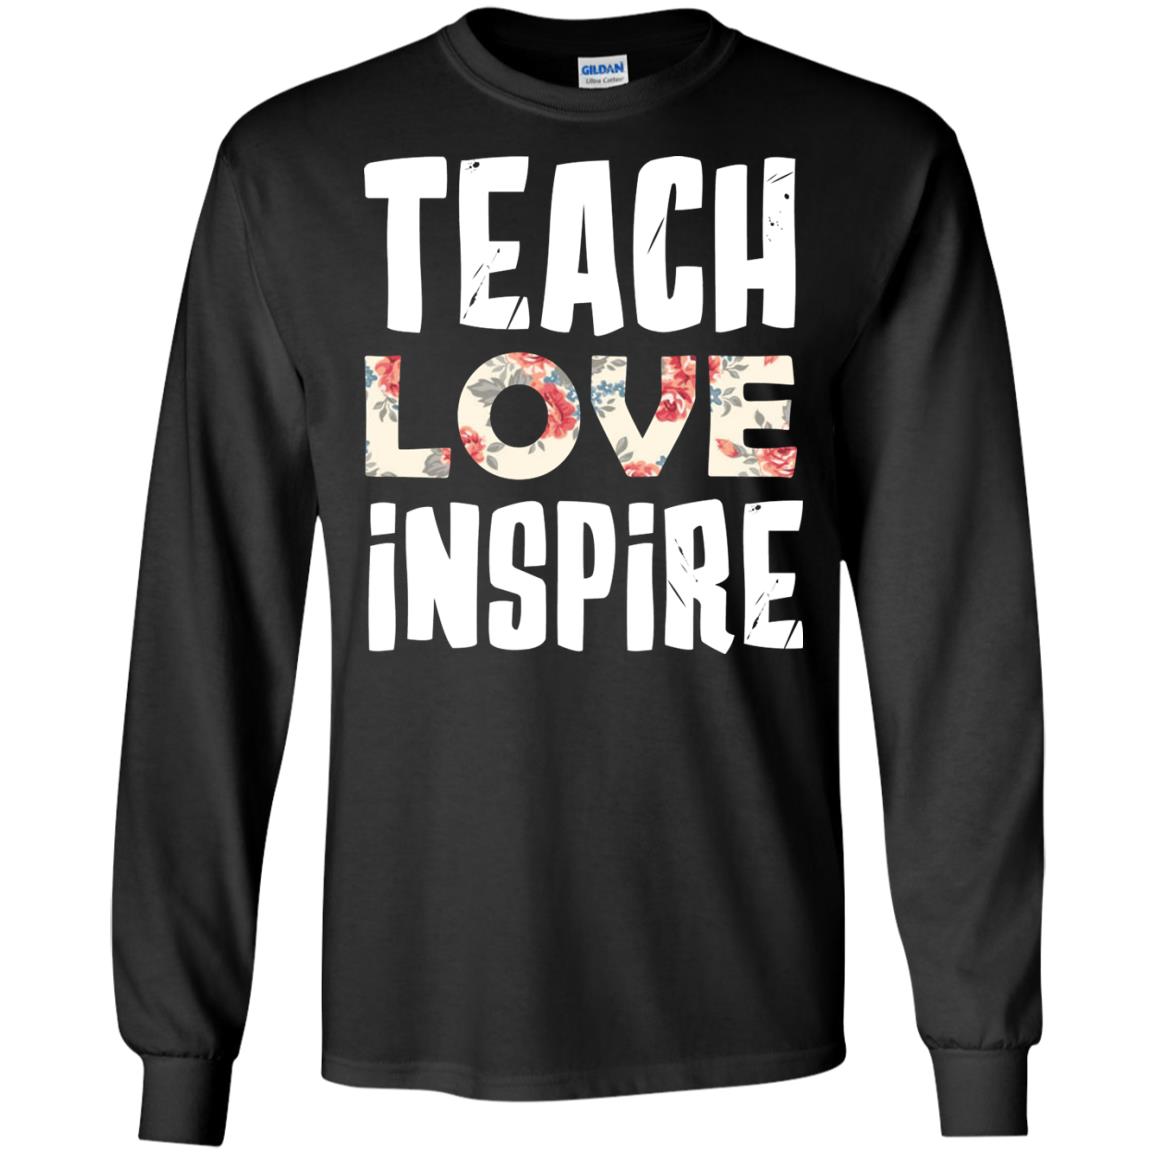 Teach Love Inpire Shirt For TeacherG240 Gildan LS Ultra Cotton T-Shirt